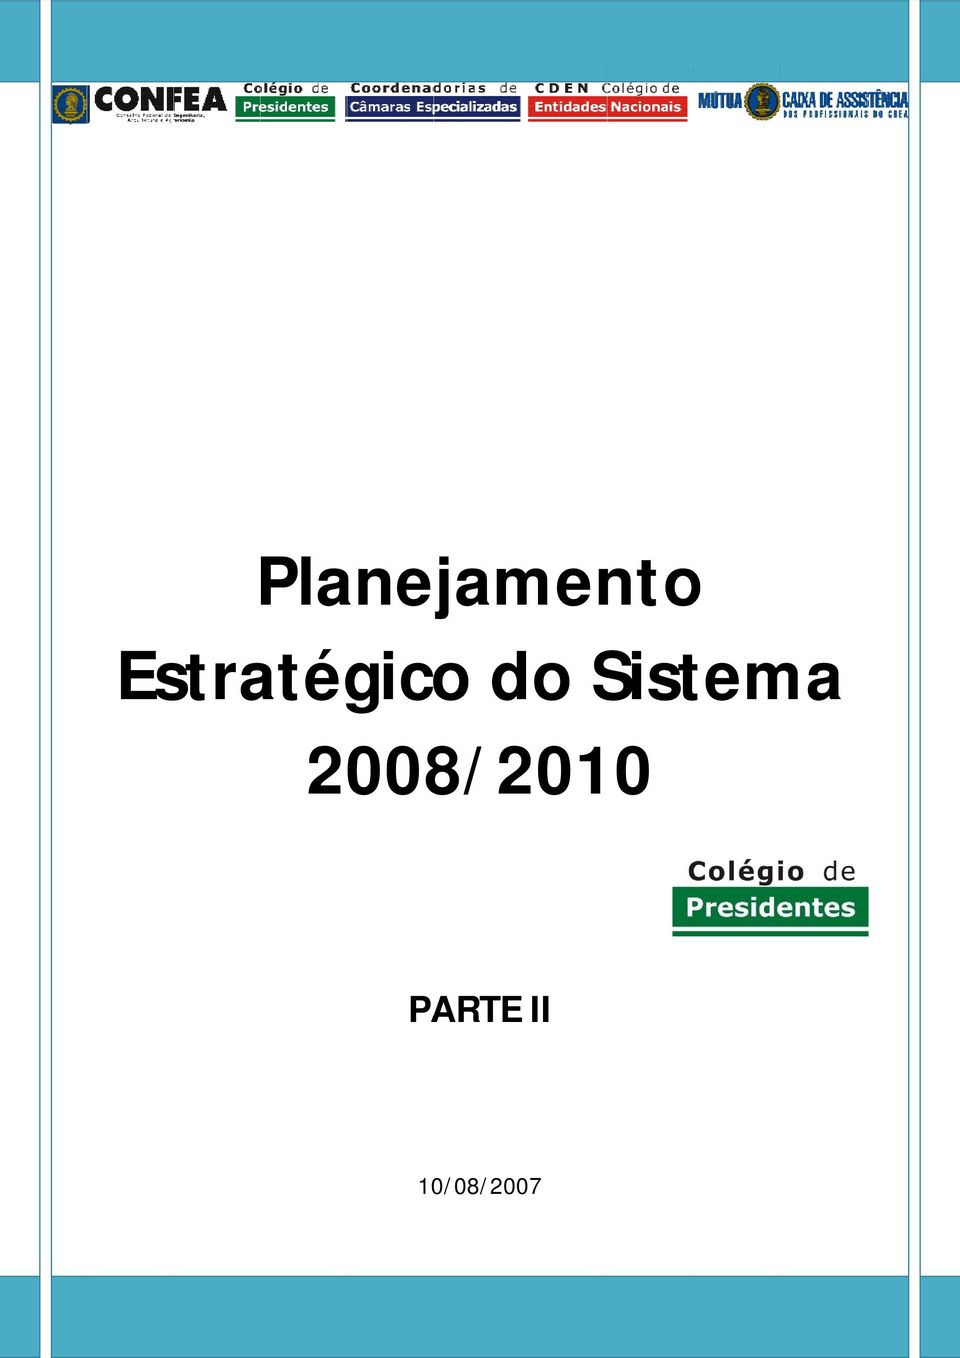 2008/2010 PARTE II